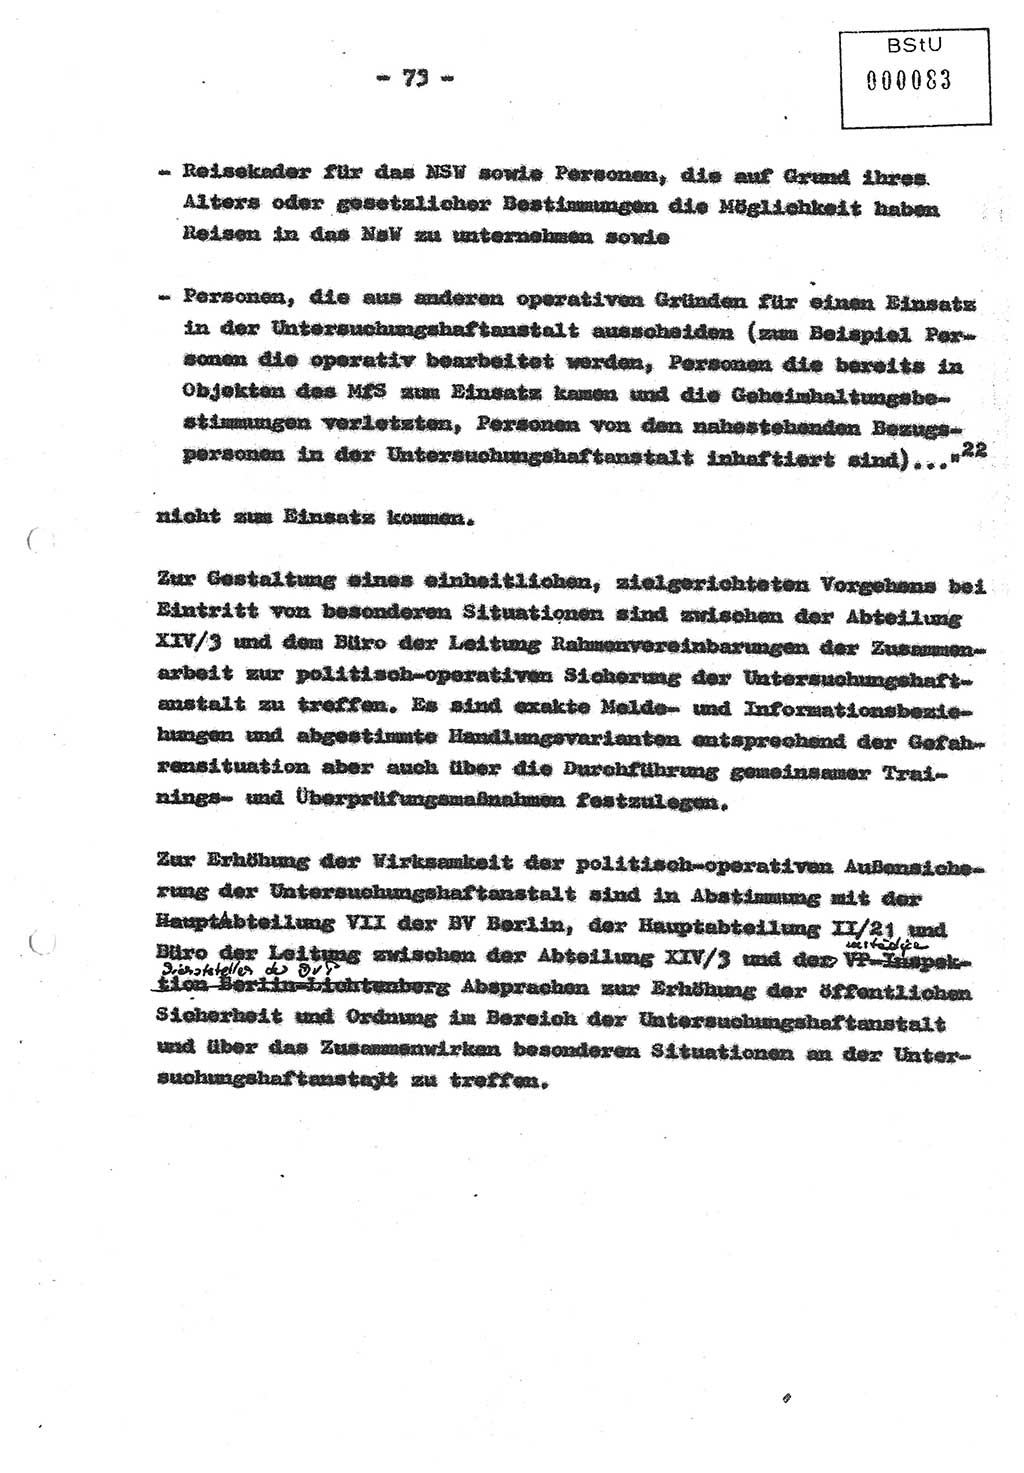 Diplomarbeit (Entwurf) Oberleutnant Peter Parke (Abt. ⅩⅣ), Ministerium für Staatssicherheit (MfS) [Deutsche Demokratische Republik (DDR)], Juristische Hochschule (JHS), Geheime Verschlußsache (GVS) o001-98/86, Potsdam 1986, Seite 83 (Dipl.-Arb. MfS DDR JHS GVS o001-98/86 1986, S. 83)